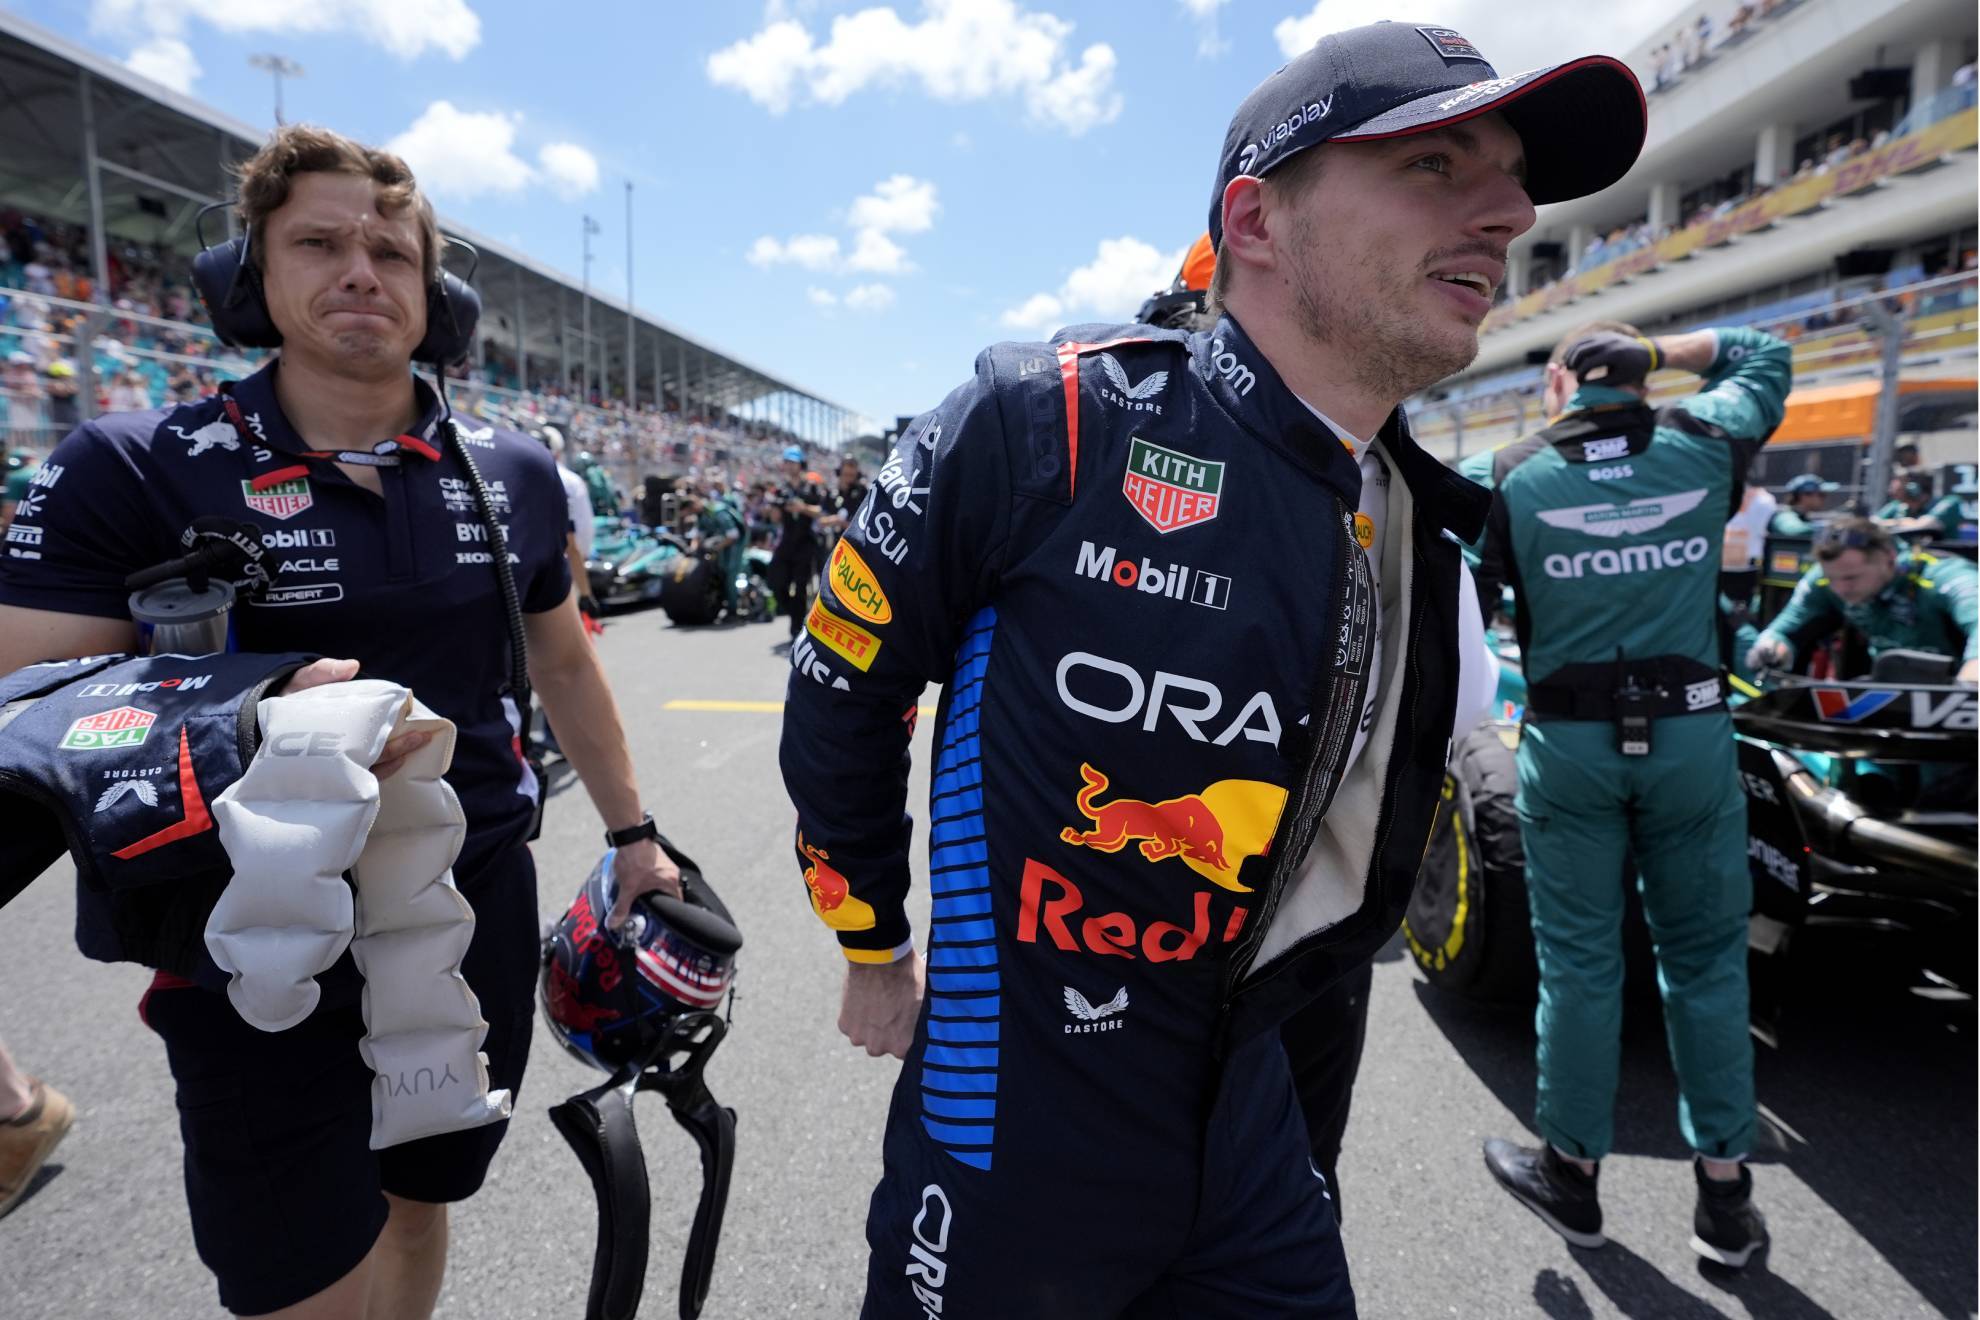 El piloto de Red Bull concluy en segundo lugar en el GP de Miami